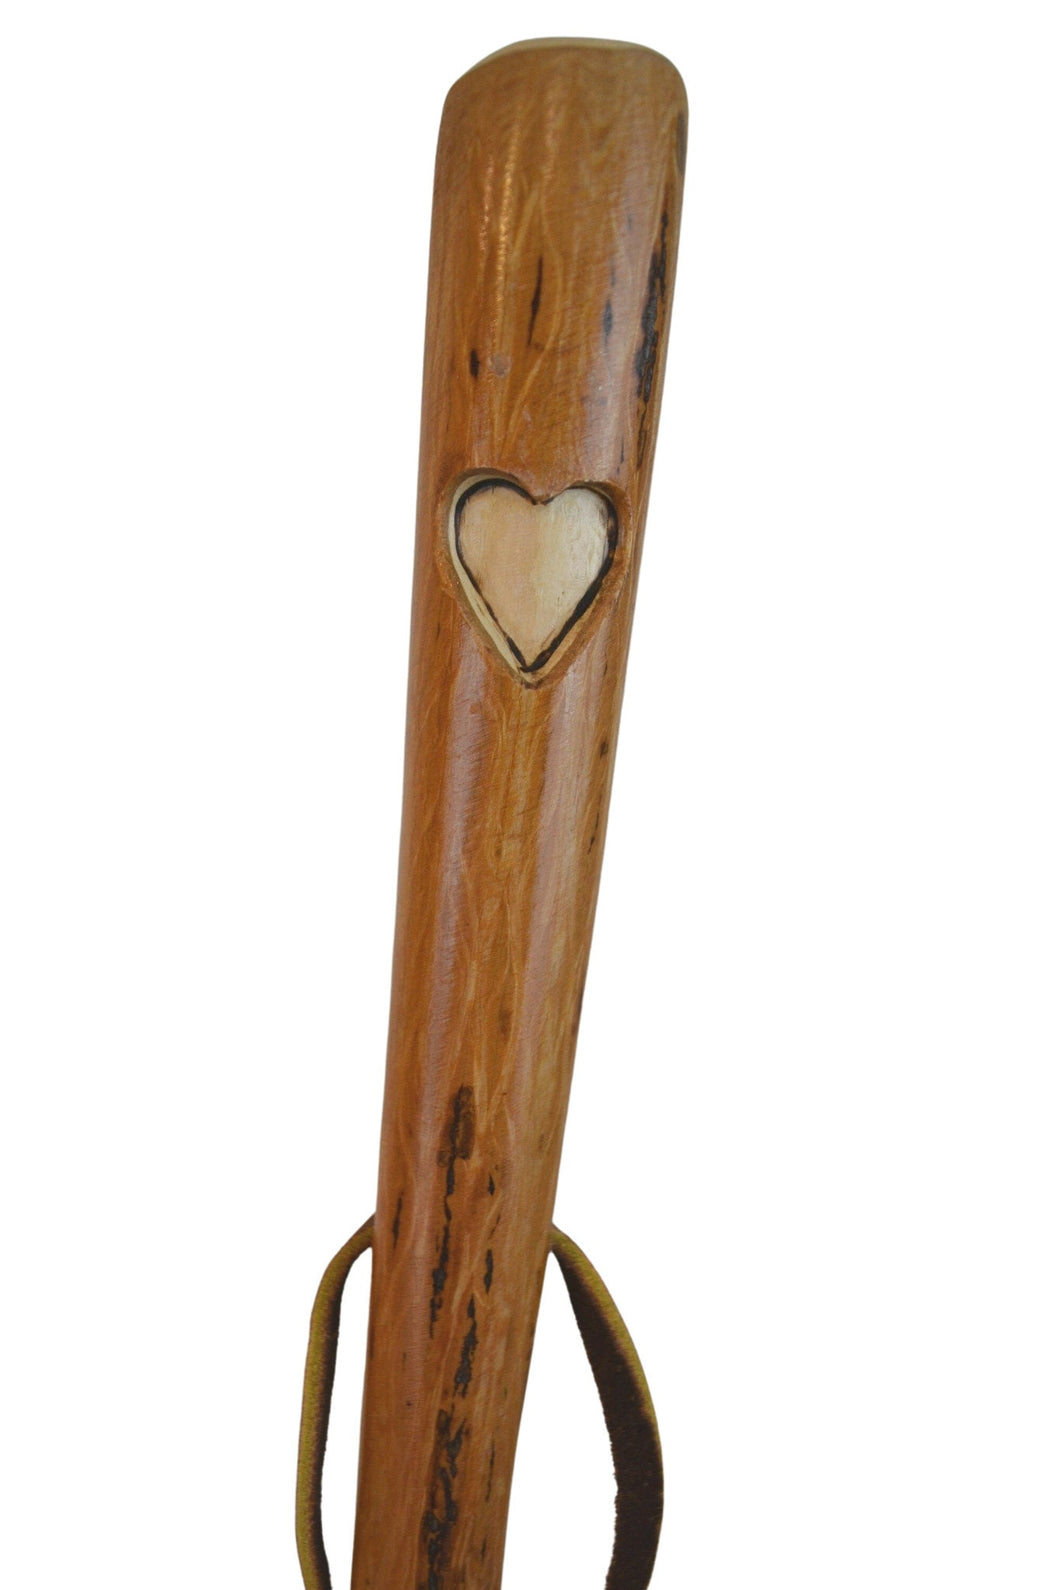 Hardwood heart carving walking stick 